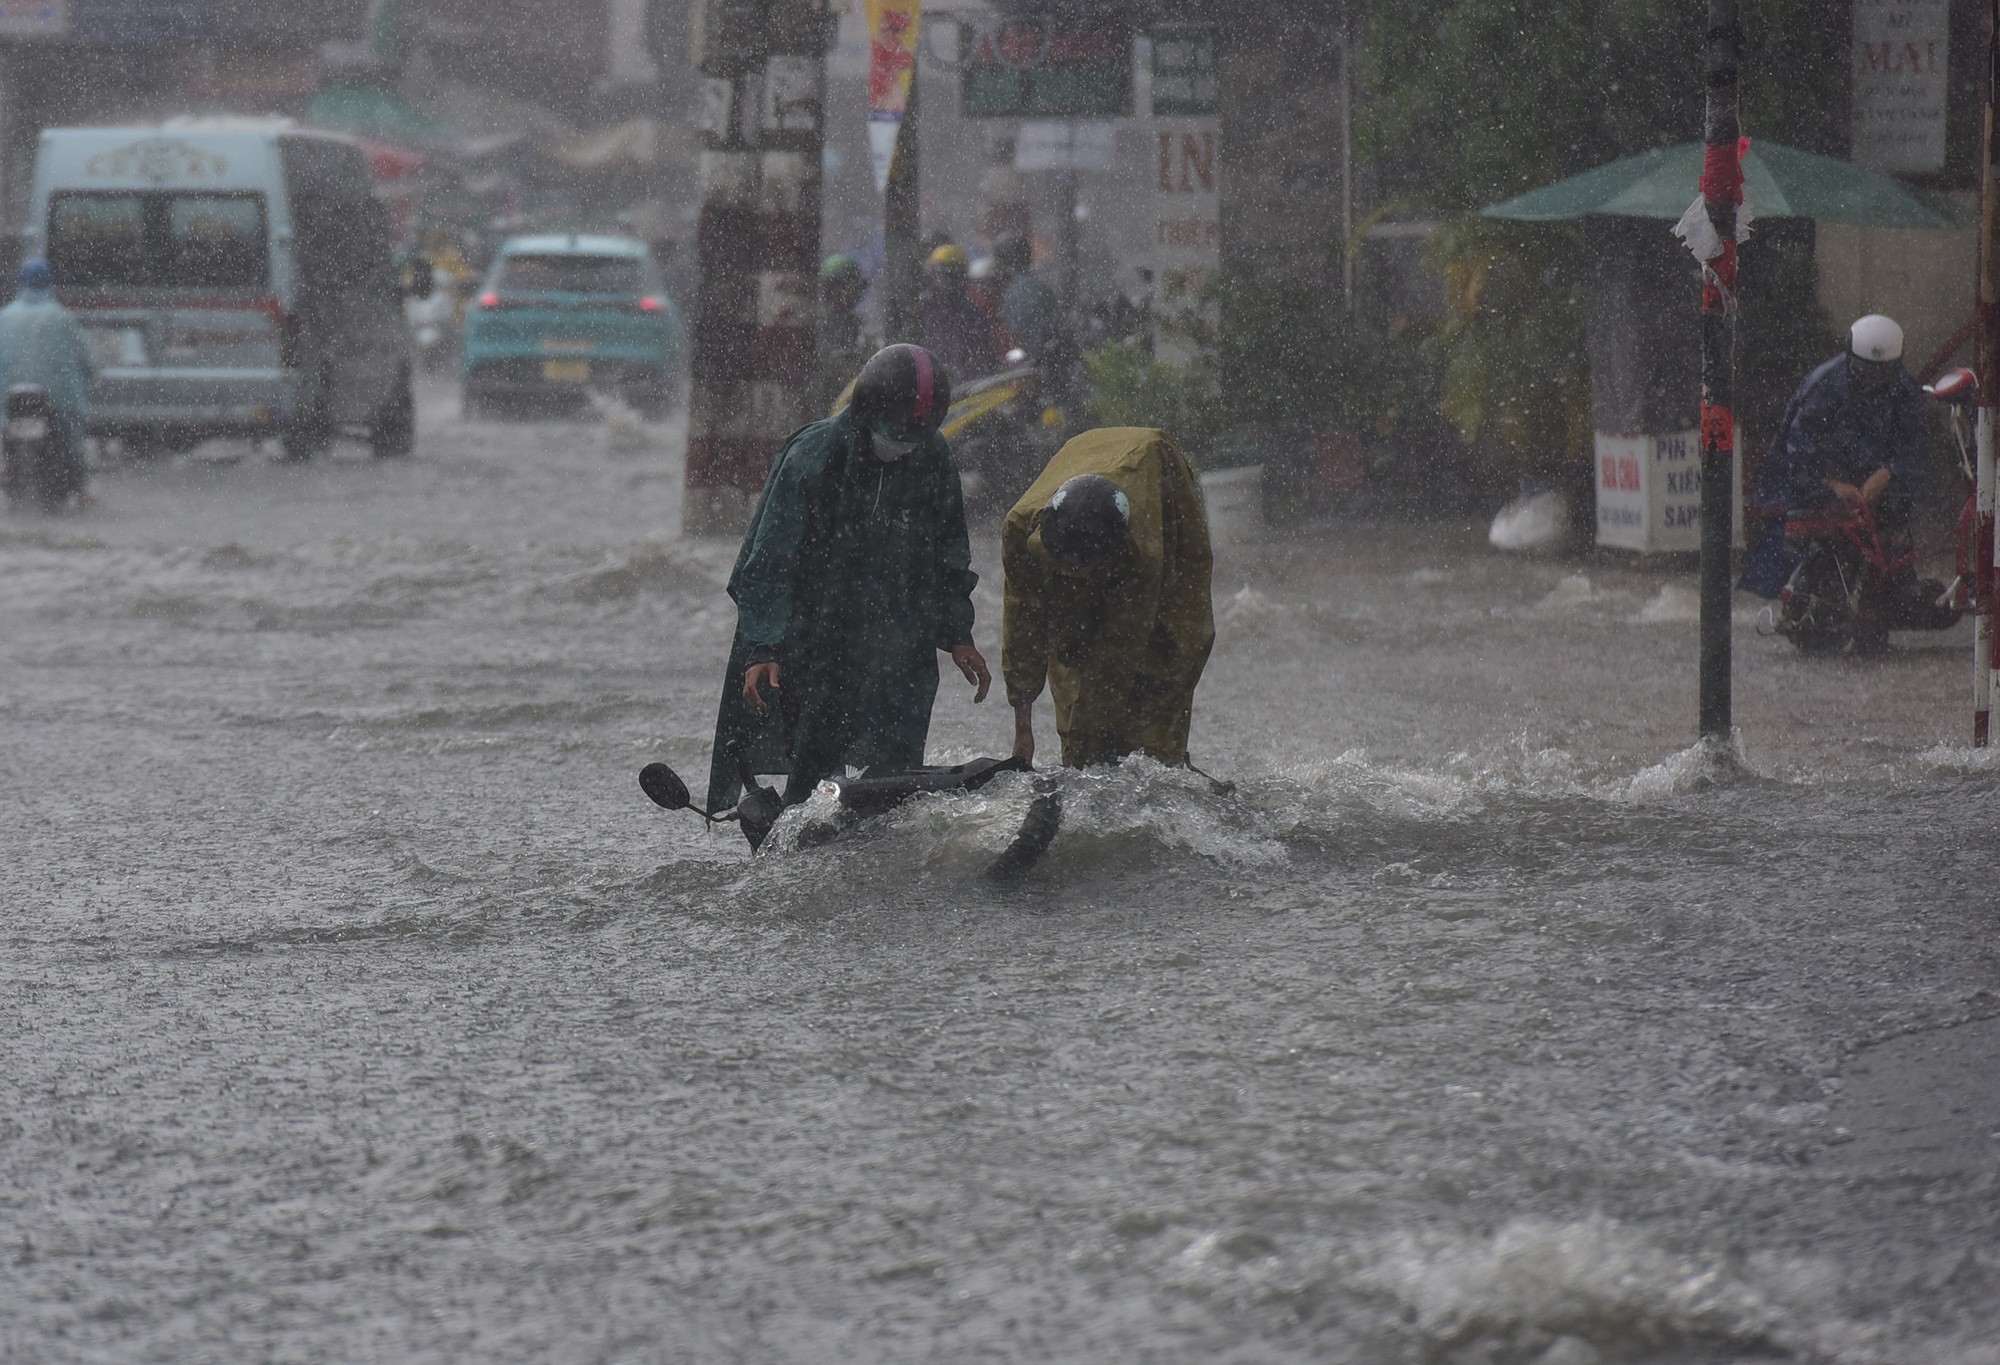 Đường ở TP.HCM ngập sâu trong mưa lớn, nhiều người ngã nhào - 4